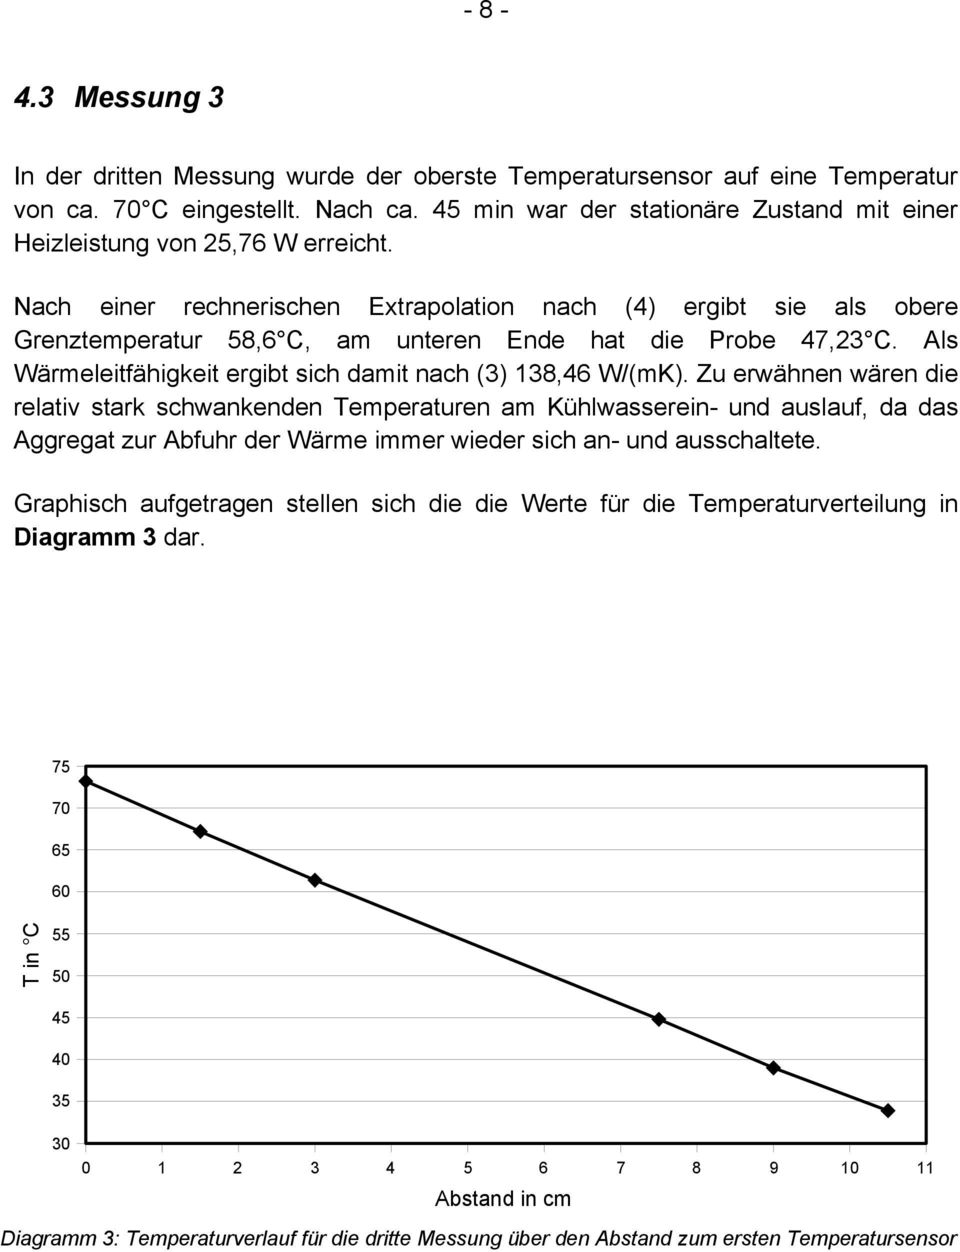 Nach einer rechnerischen Extrapolation nach (4) ergibt sie als obere Grenztemperatur 58,6 C, am unteren Ende hat die Probe 47,23 C. Als Wärmeleitfähigkeit ergibt sich damit nach (3) 138,46 W/(mK).